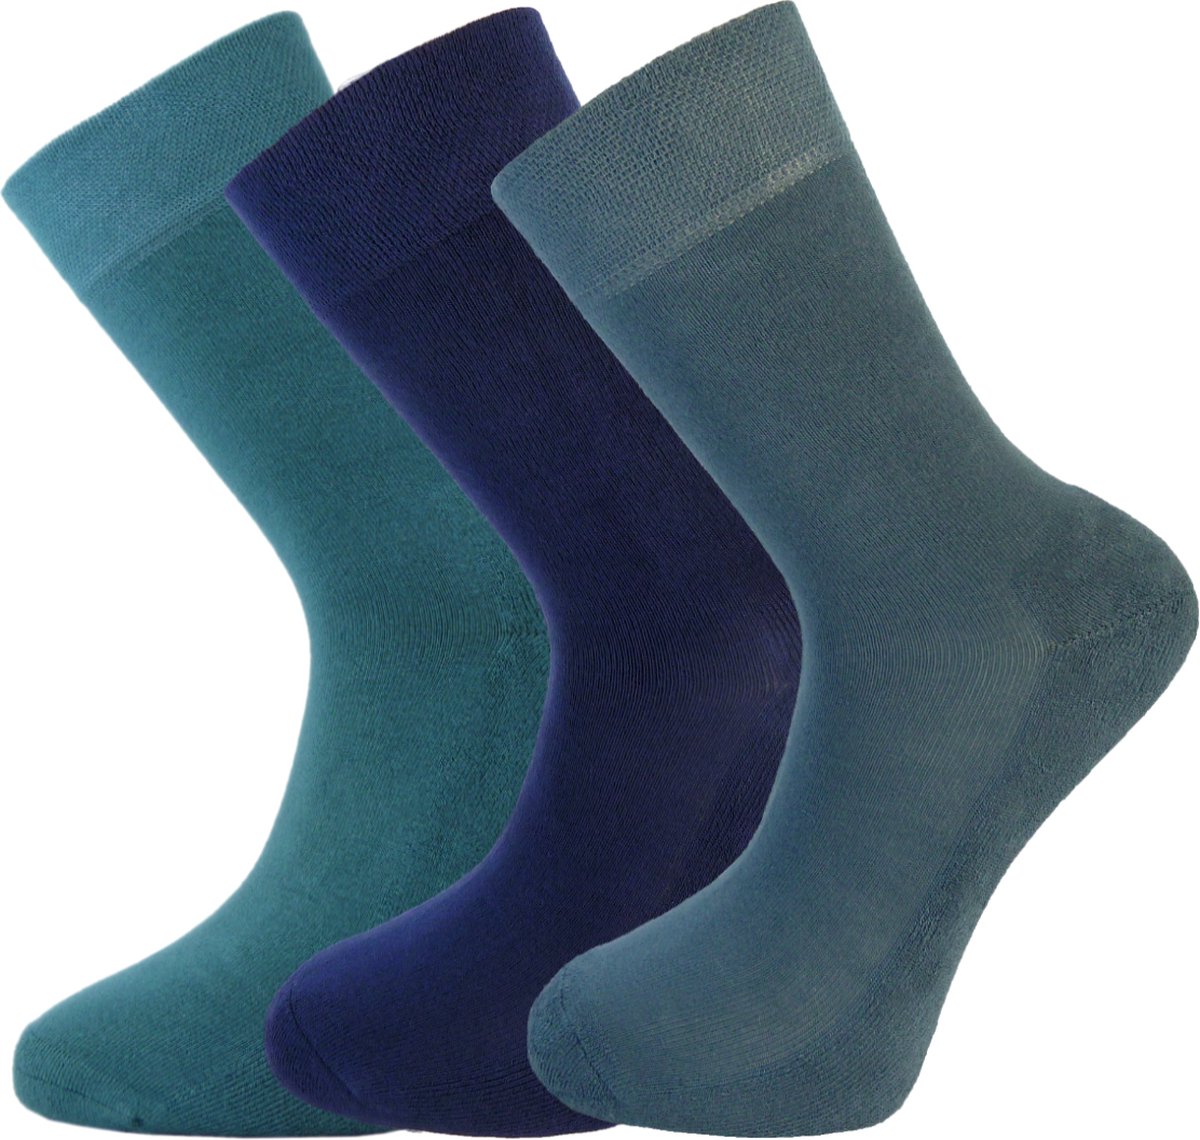 Bamboe sokken - 3 paar - Blauw - RAF blauw - Groenblauw - Maat 35-37